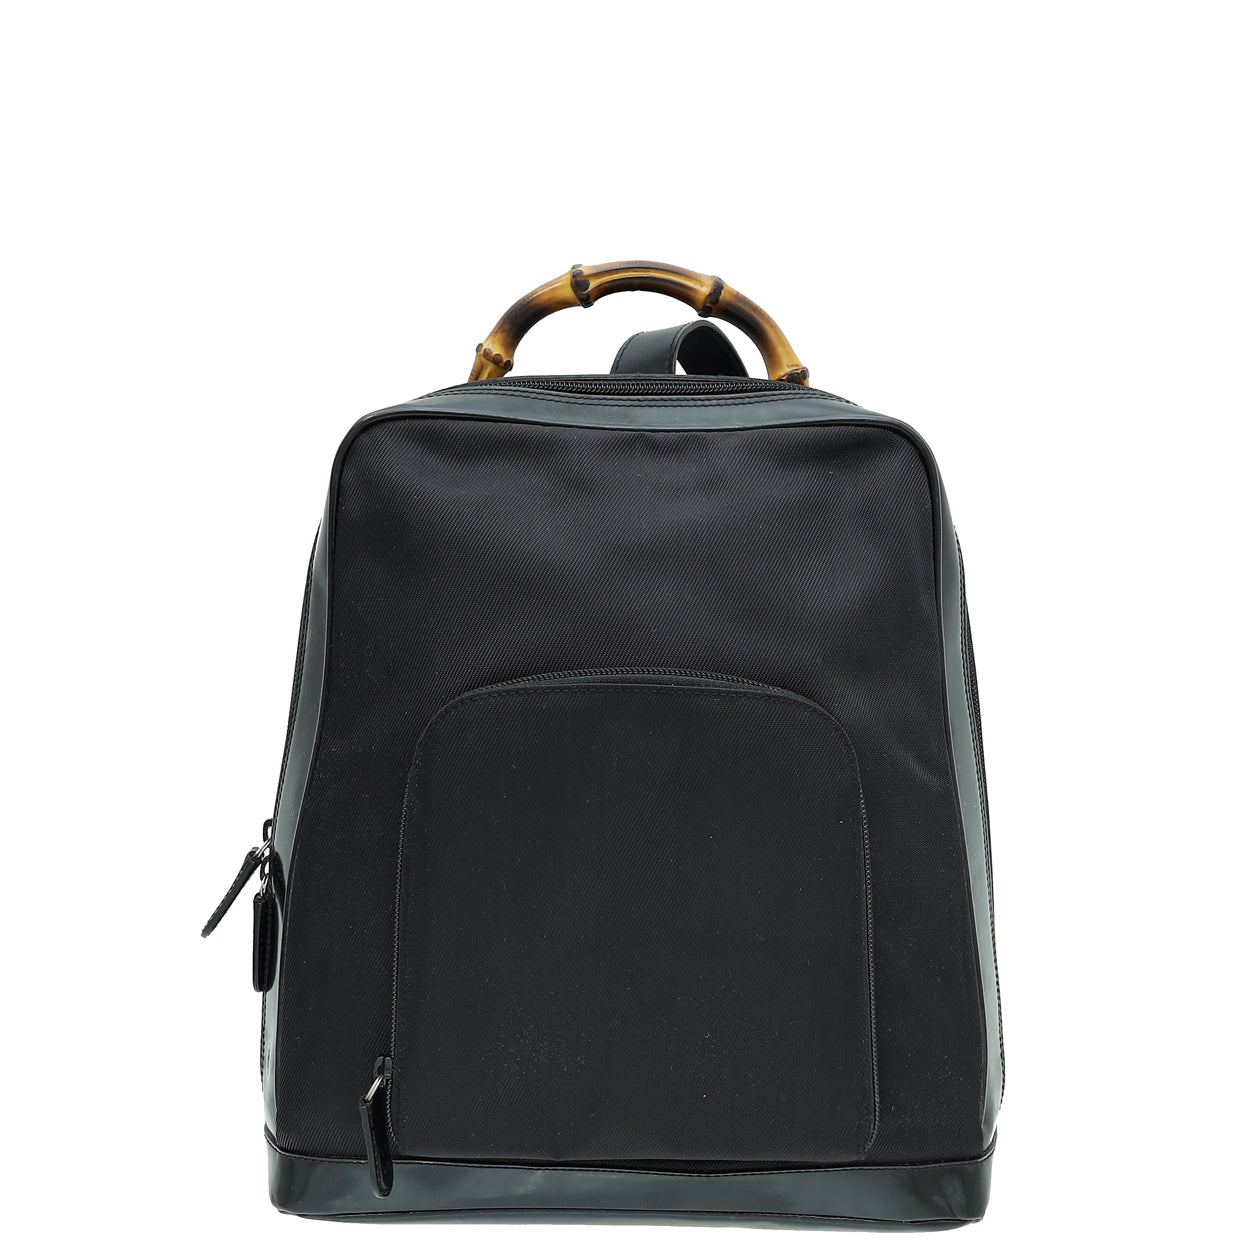 Gucci Black Bamboo One Sling Backpack Bag